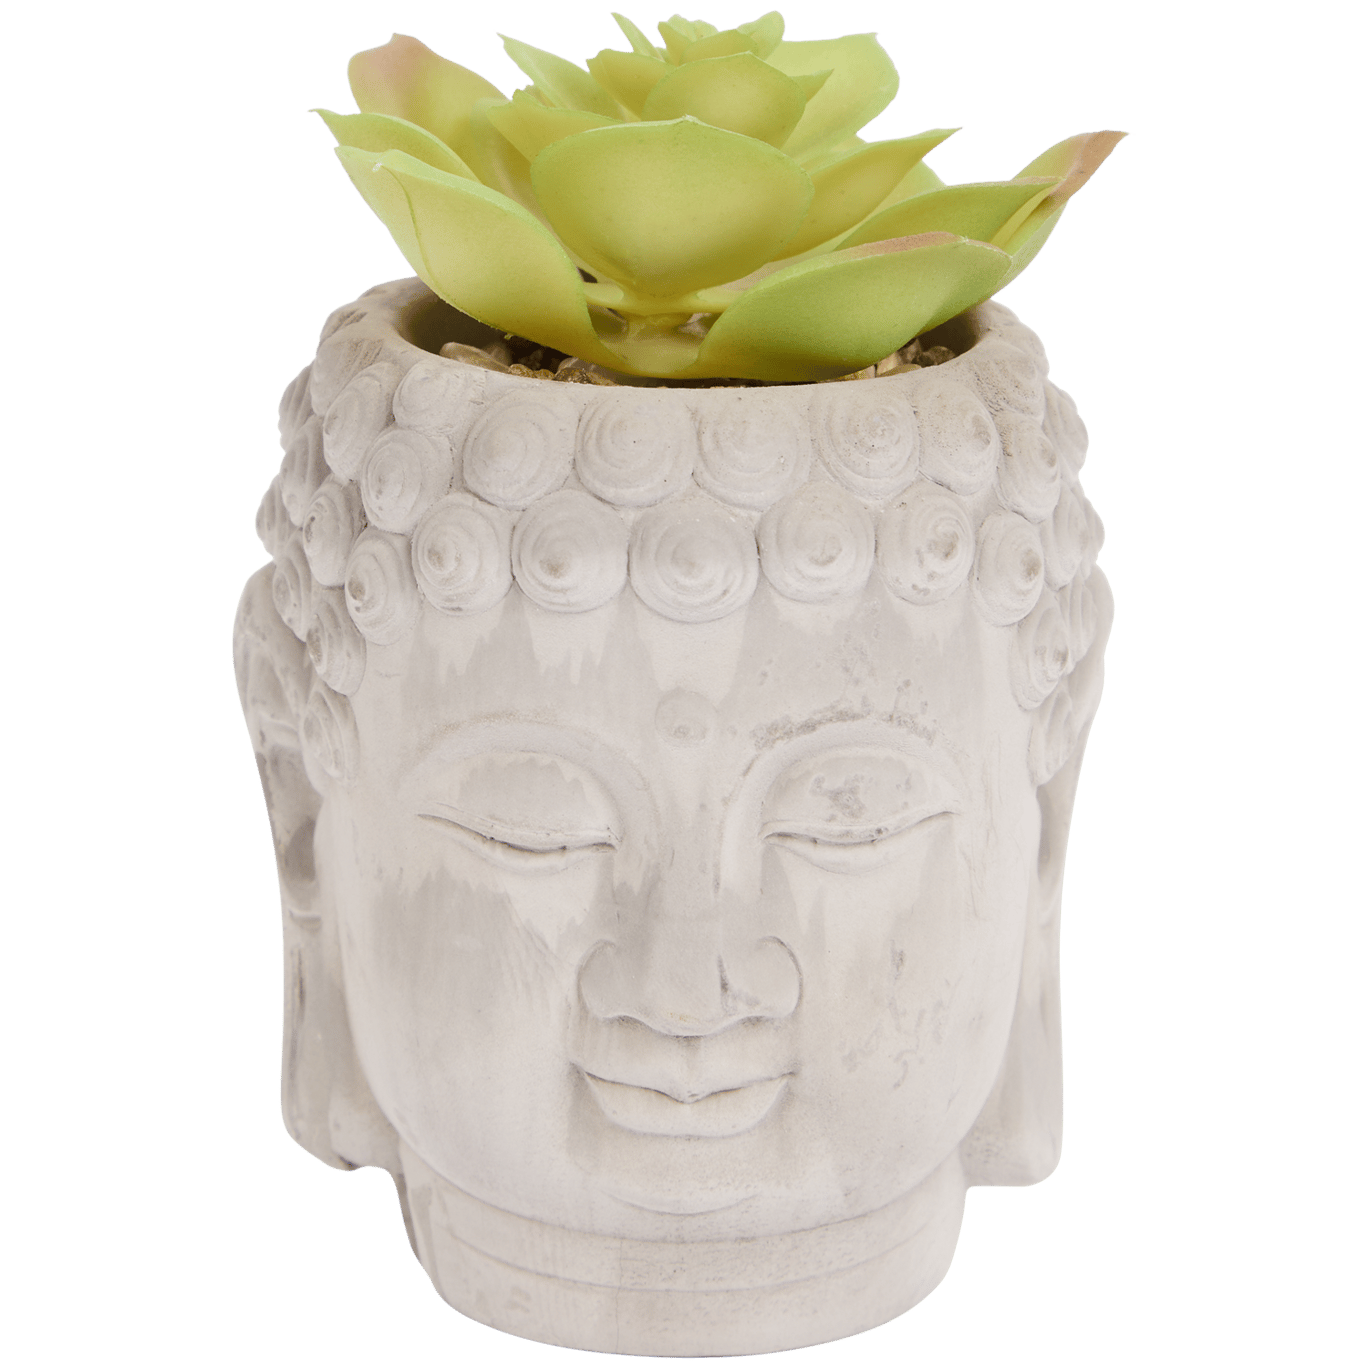 Doniczka Budda ze sztuczną rośliną